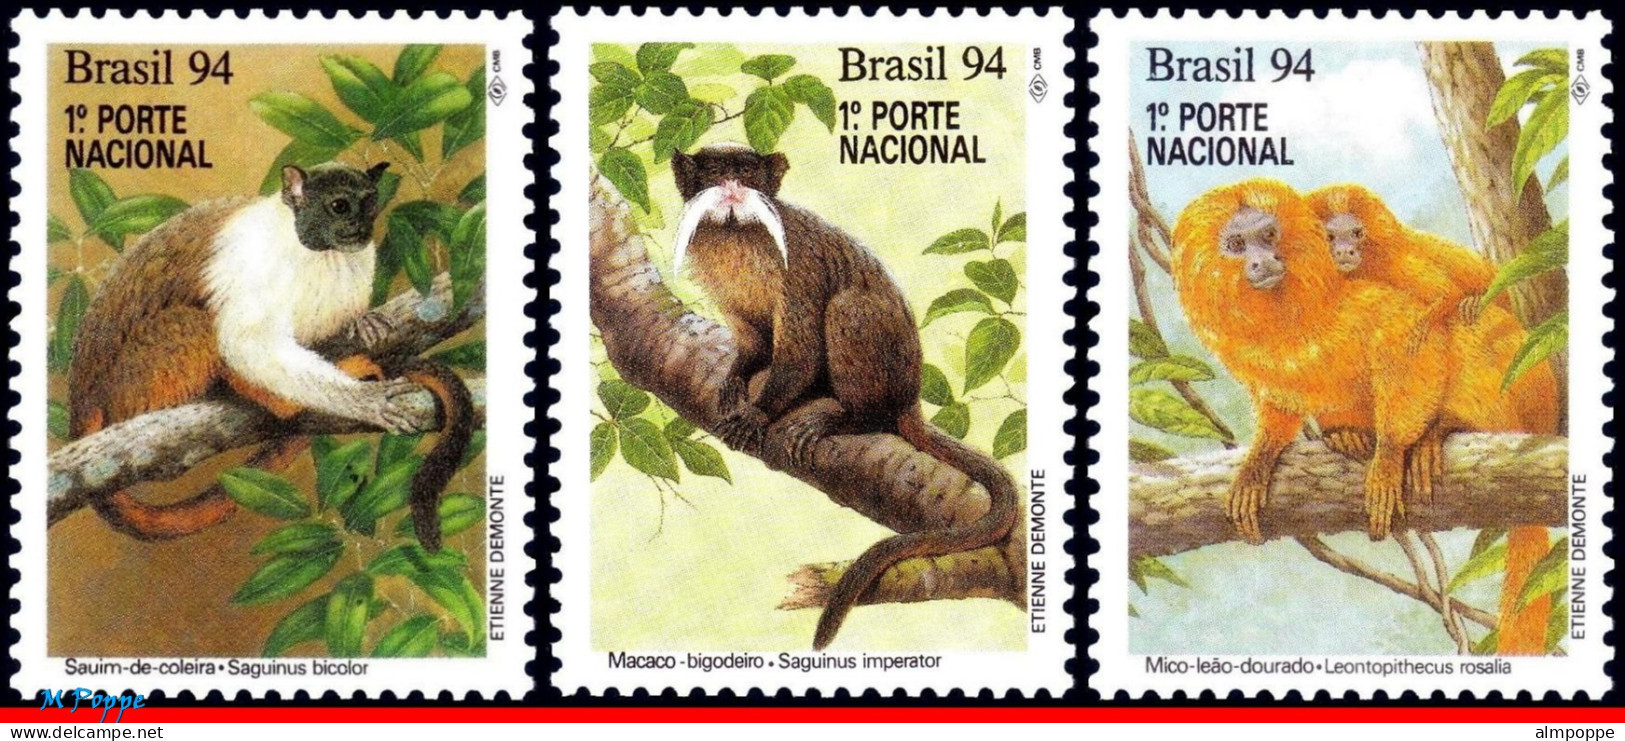 Ref. BR-2474-76 BRAZIL 1994 - MONKEYS, NATURE,PRESERVATION, MI# 2589-2591, SET MNH, ANIMALS, FAUNA 3V Sc# 2474-2476 - Neufs